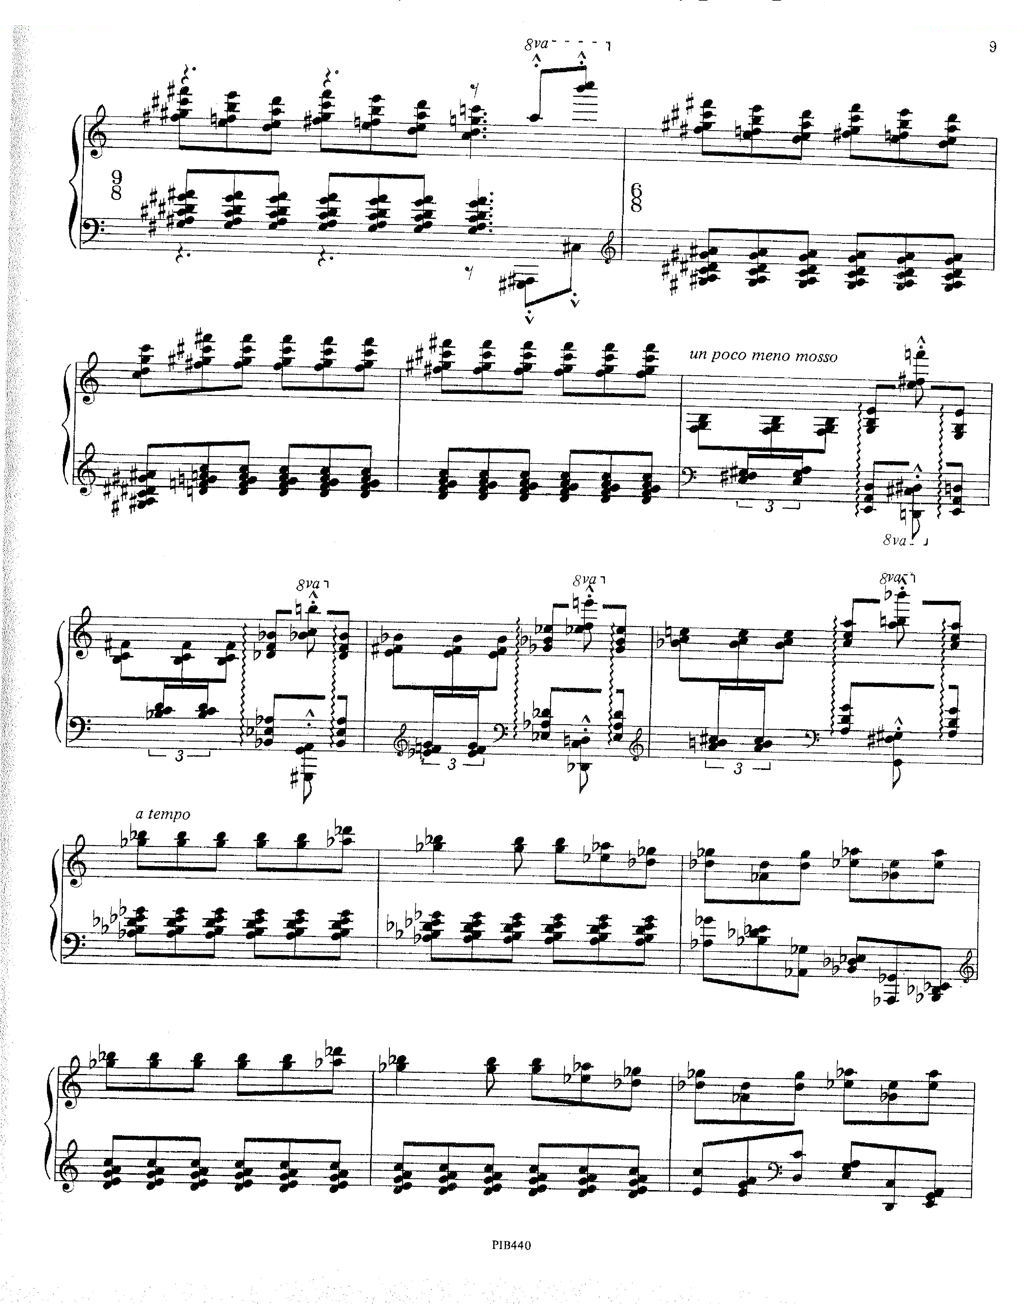 Ginastera - Sonata No.3 Sonata No.3 -